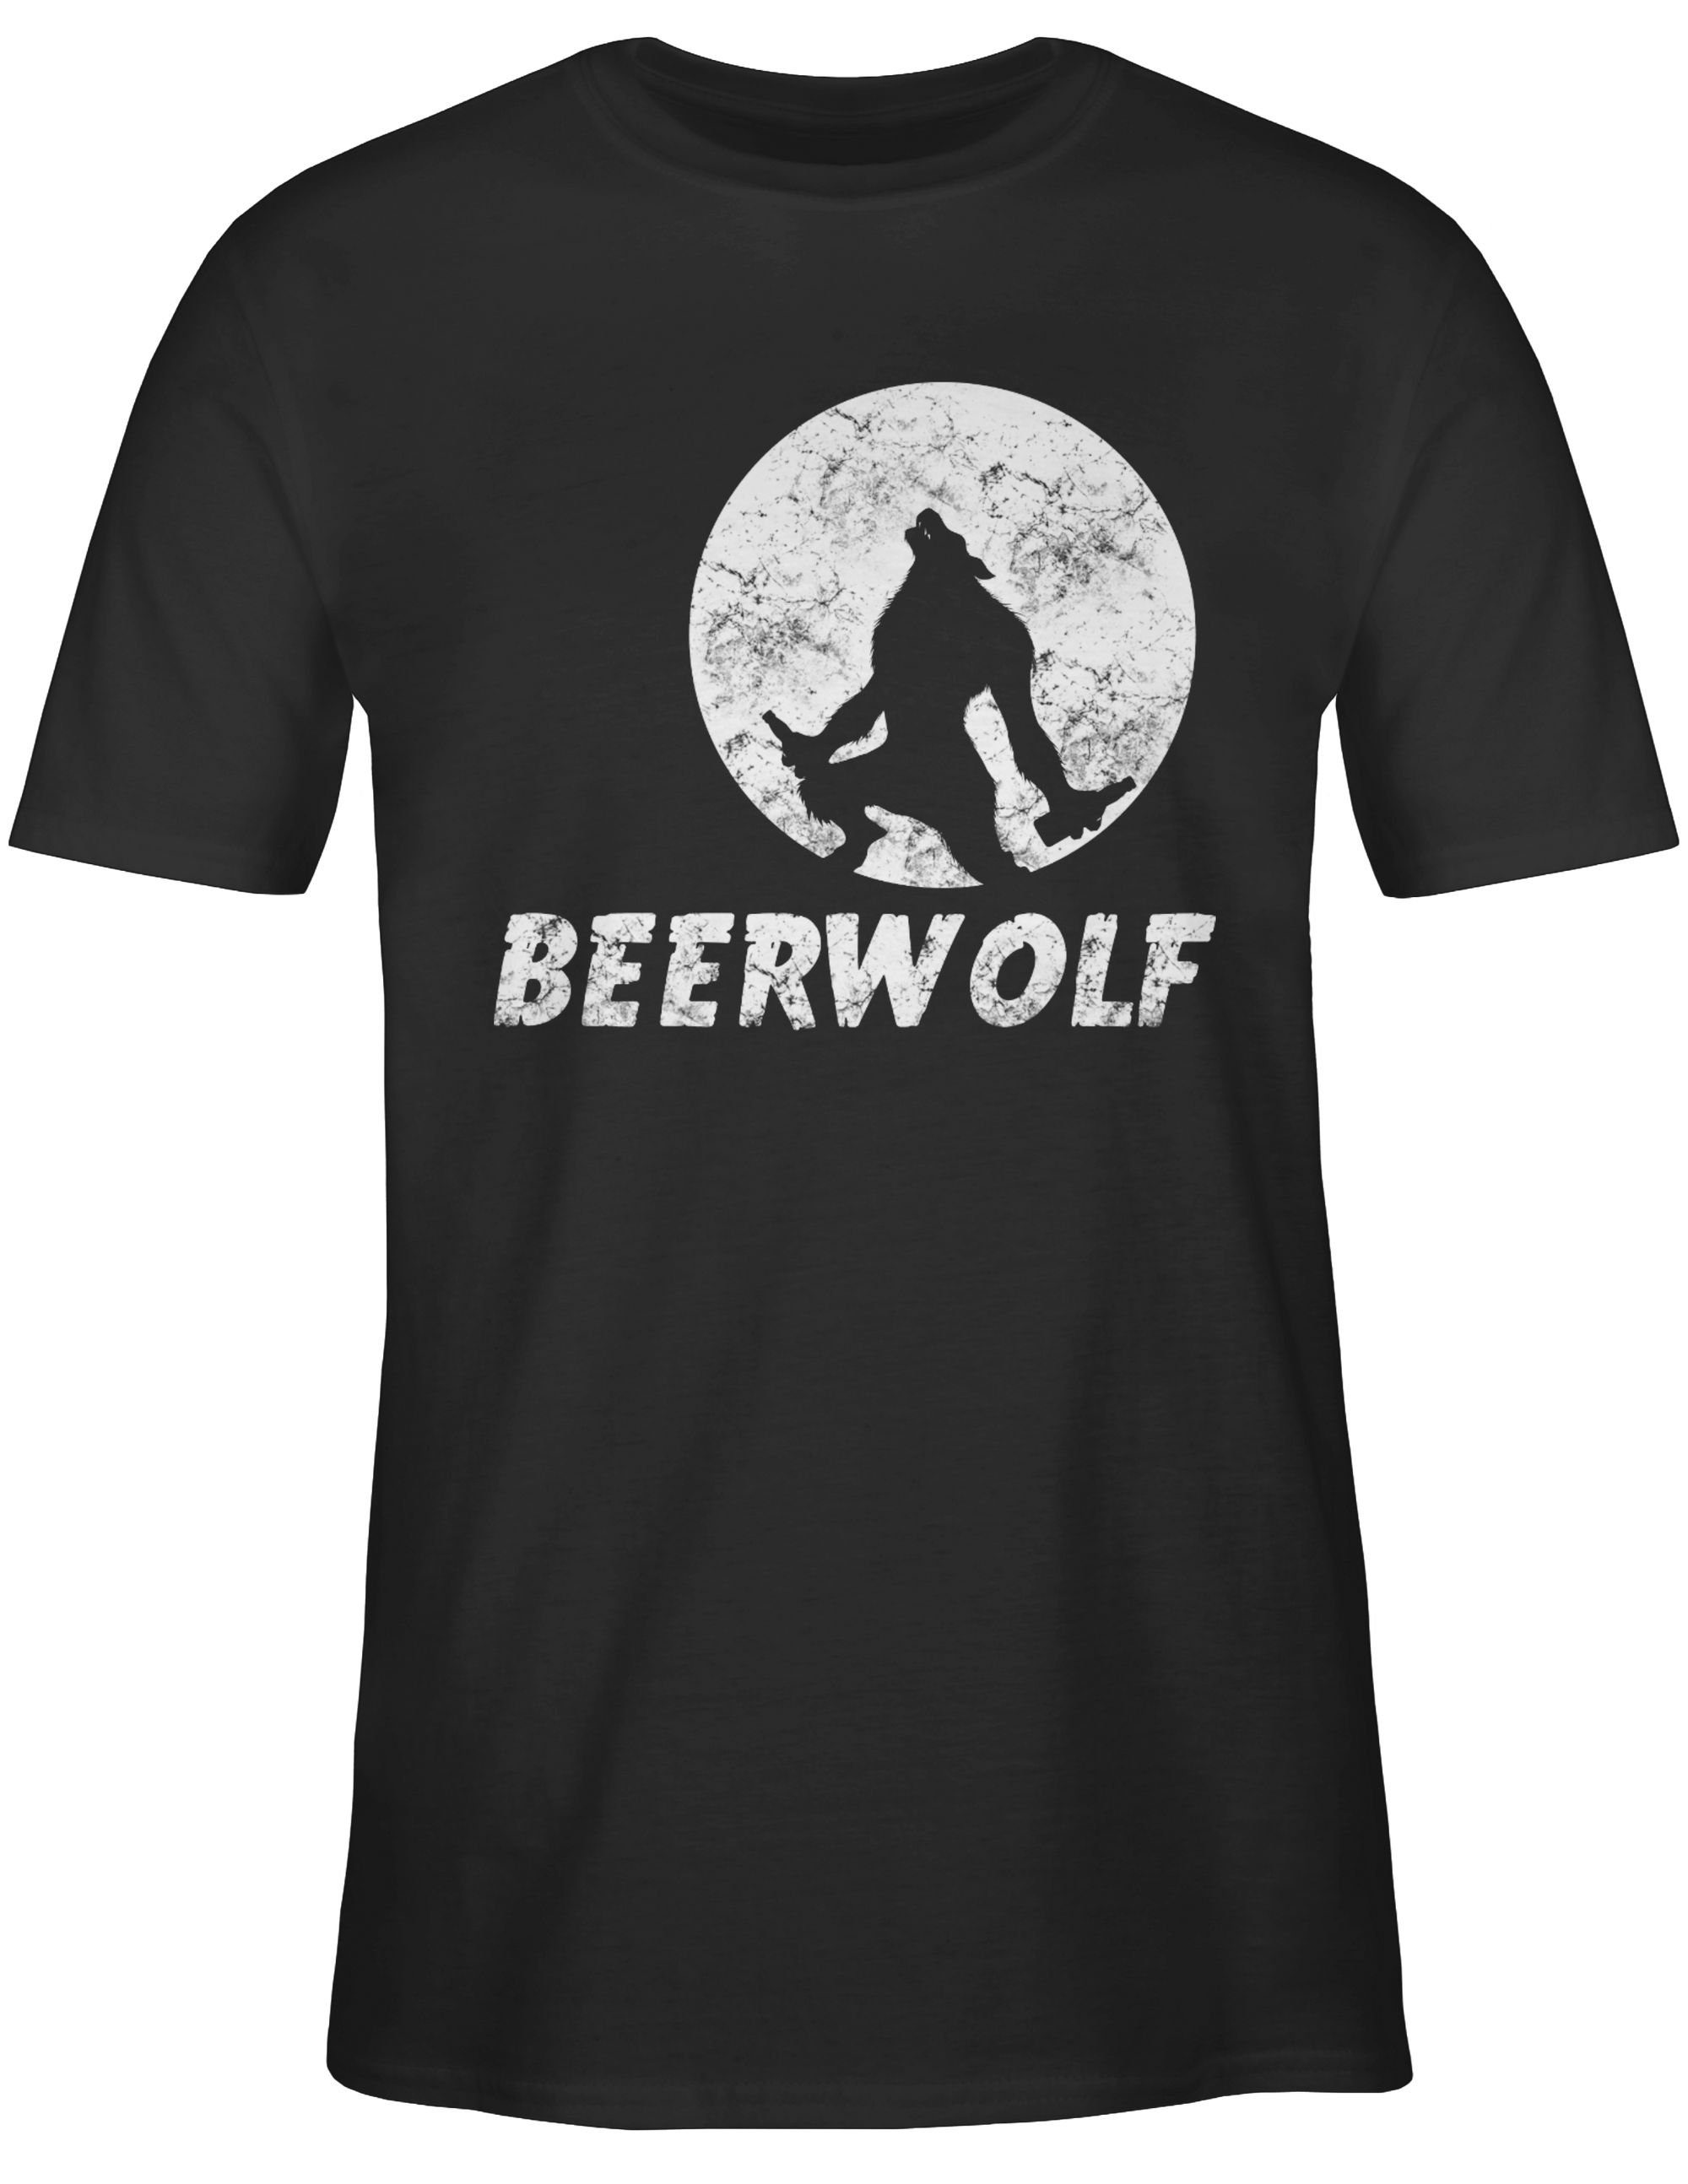 Statement Sprüche Shirtracer T-Shirt Schwarz 2 Beerwolf